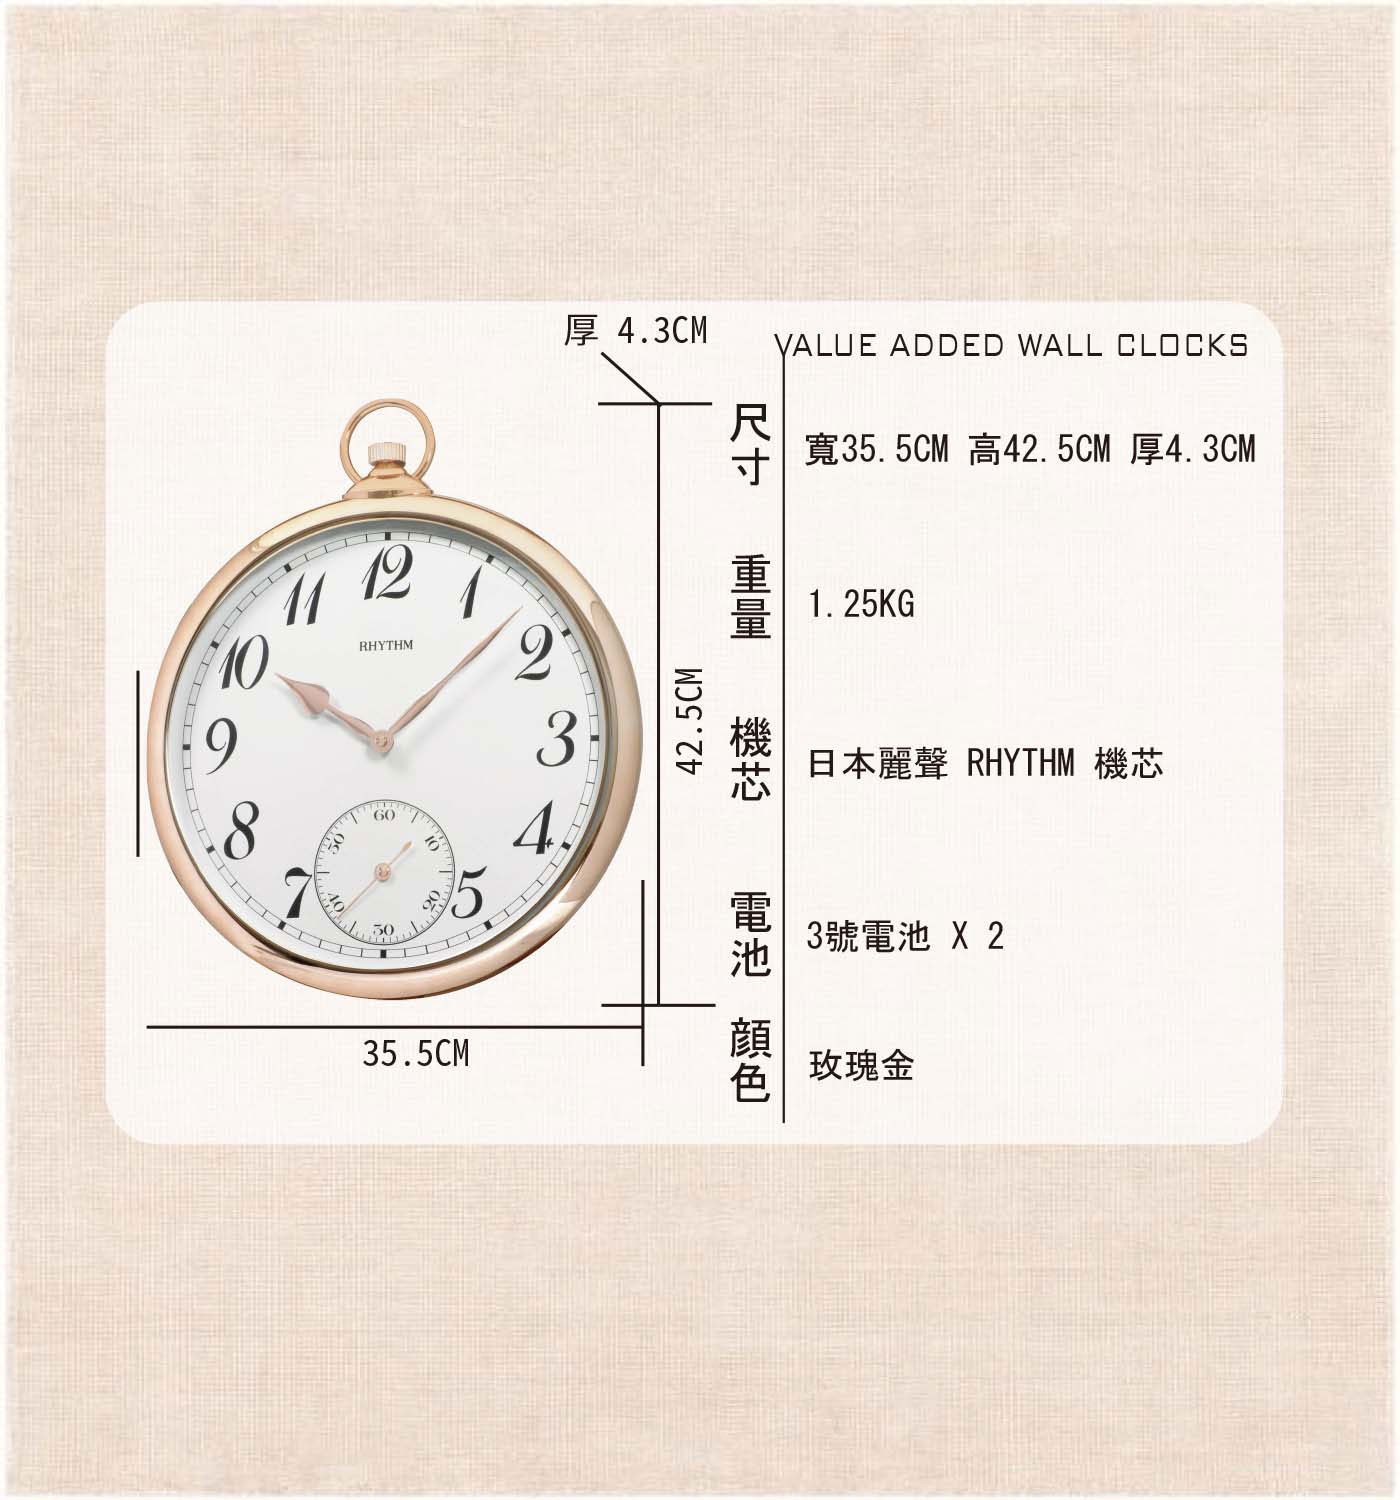 麗聲鐘懷錶造型掛鐘 CMG752日本麗聲時計工業株式會社始創於1950年以精湛的工藝準確的走時千姿百態的轉動設計著稱於世